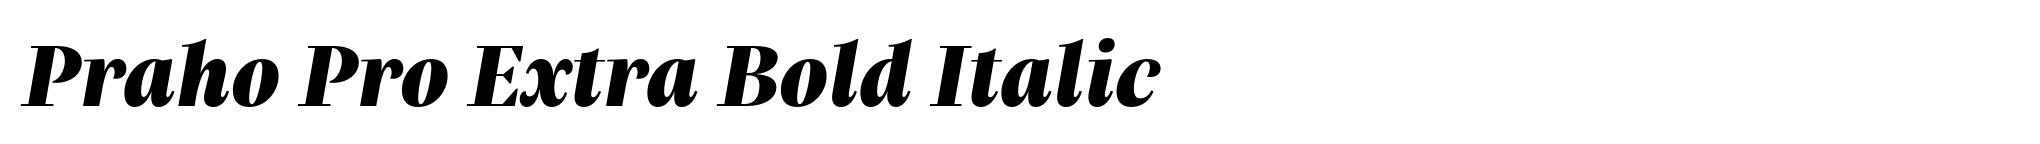 Praho Pro Extra Bold Italic image